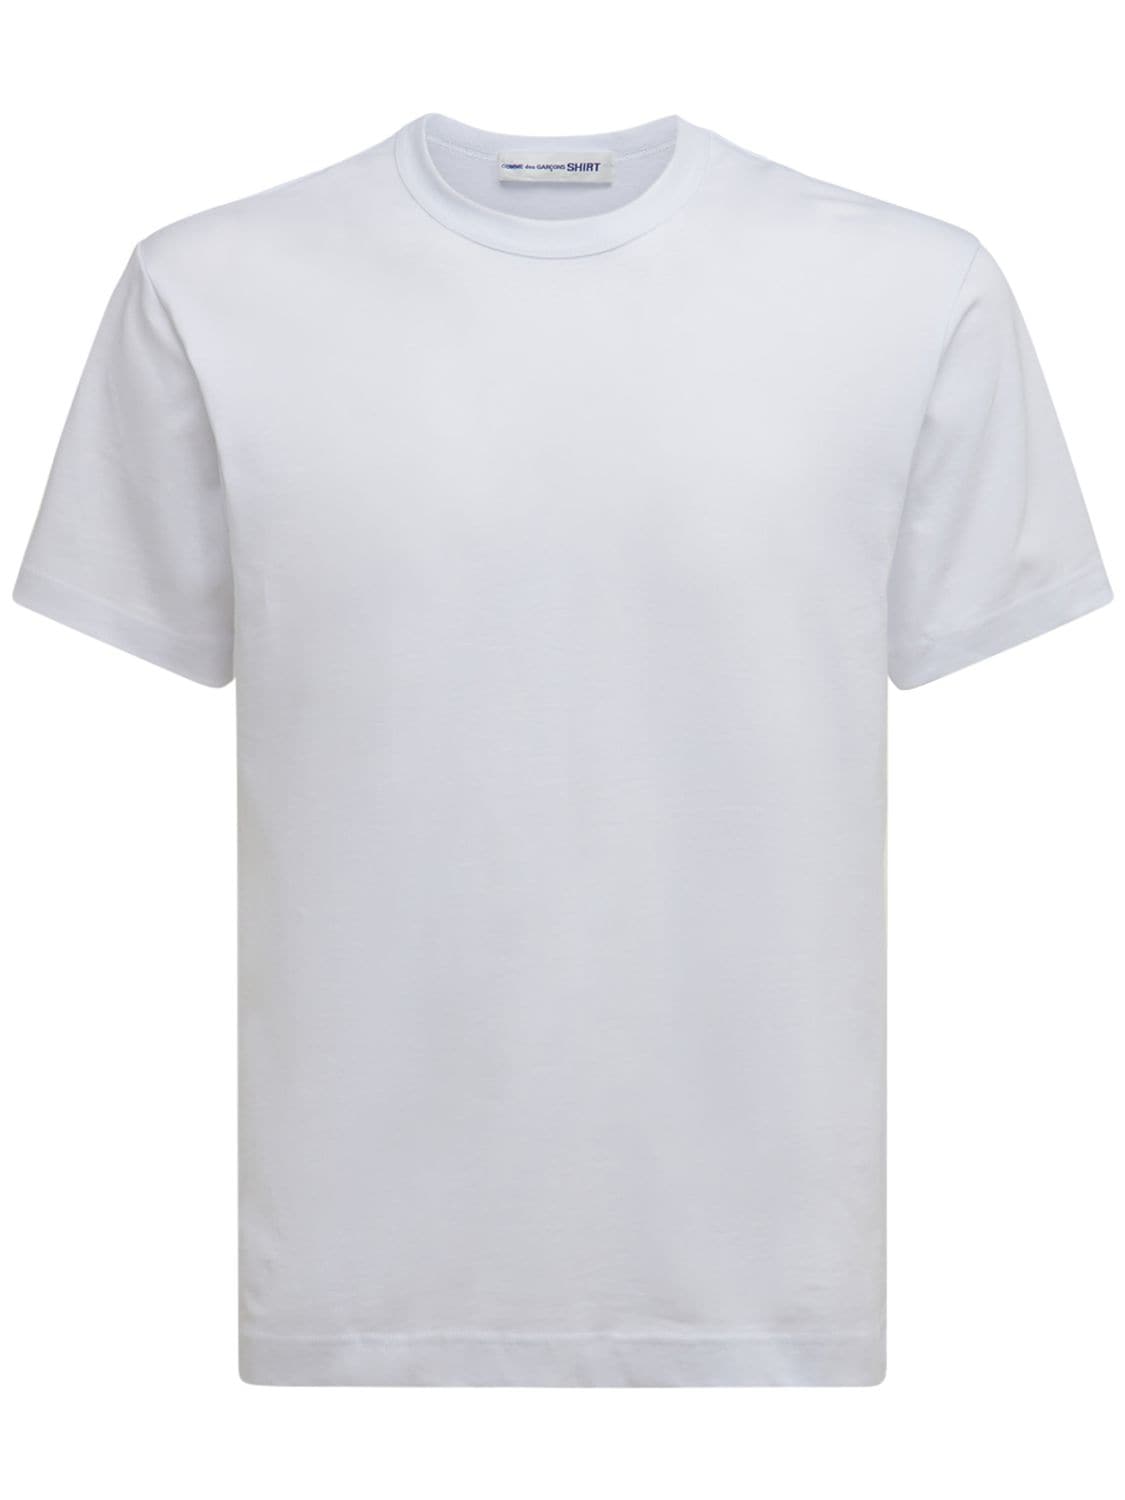 COMME DES GARÇONS SHIRT LOGO印花棉质平纹针织T恤,74IJRN018-MW2